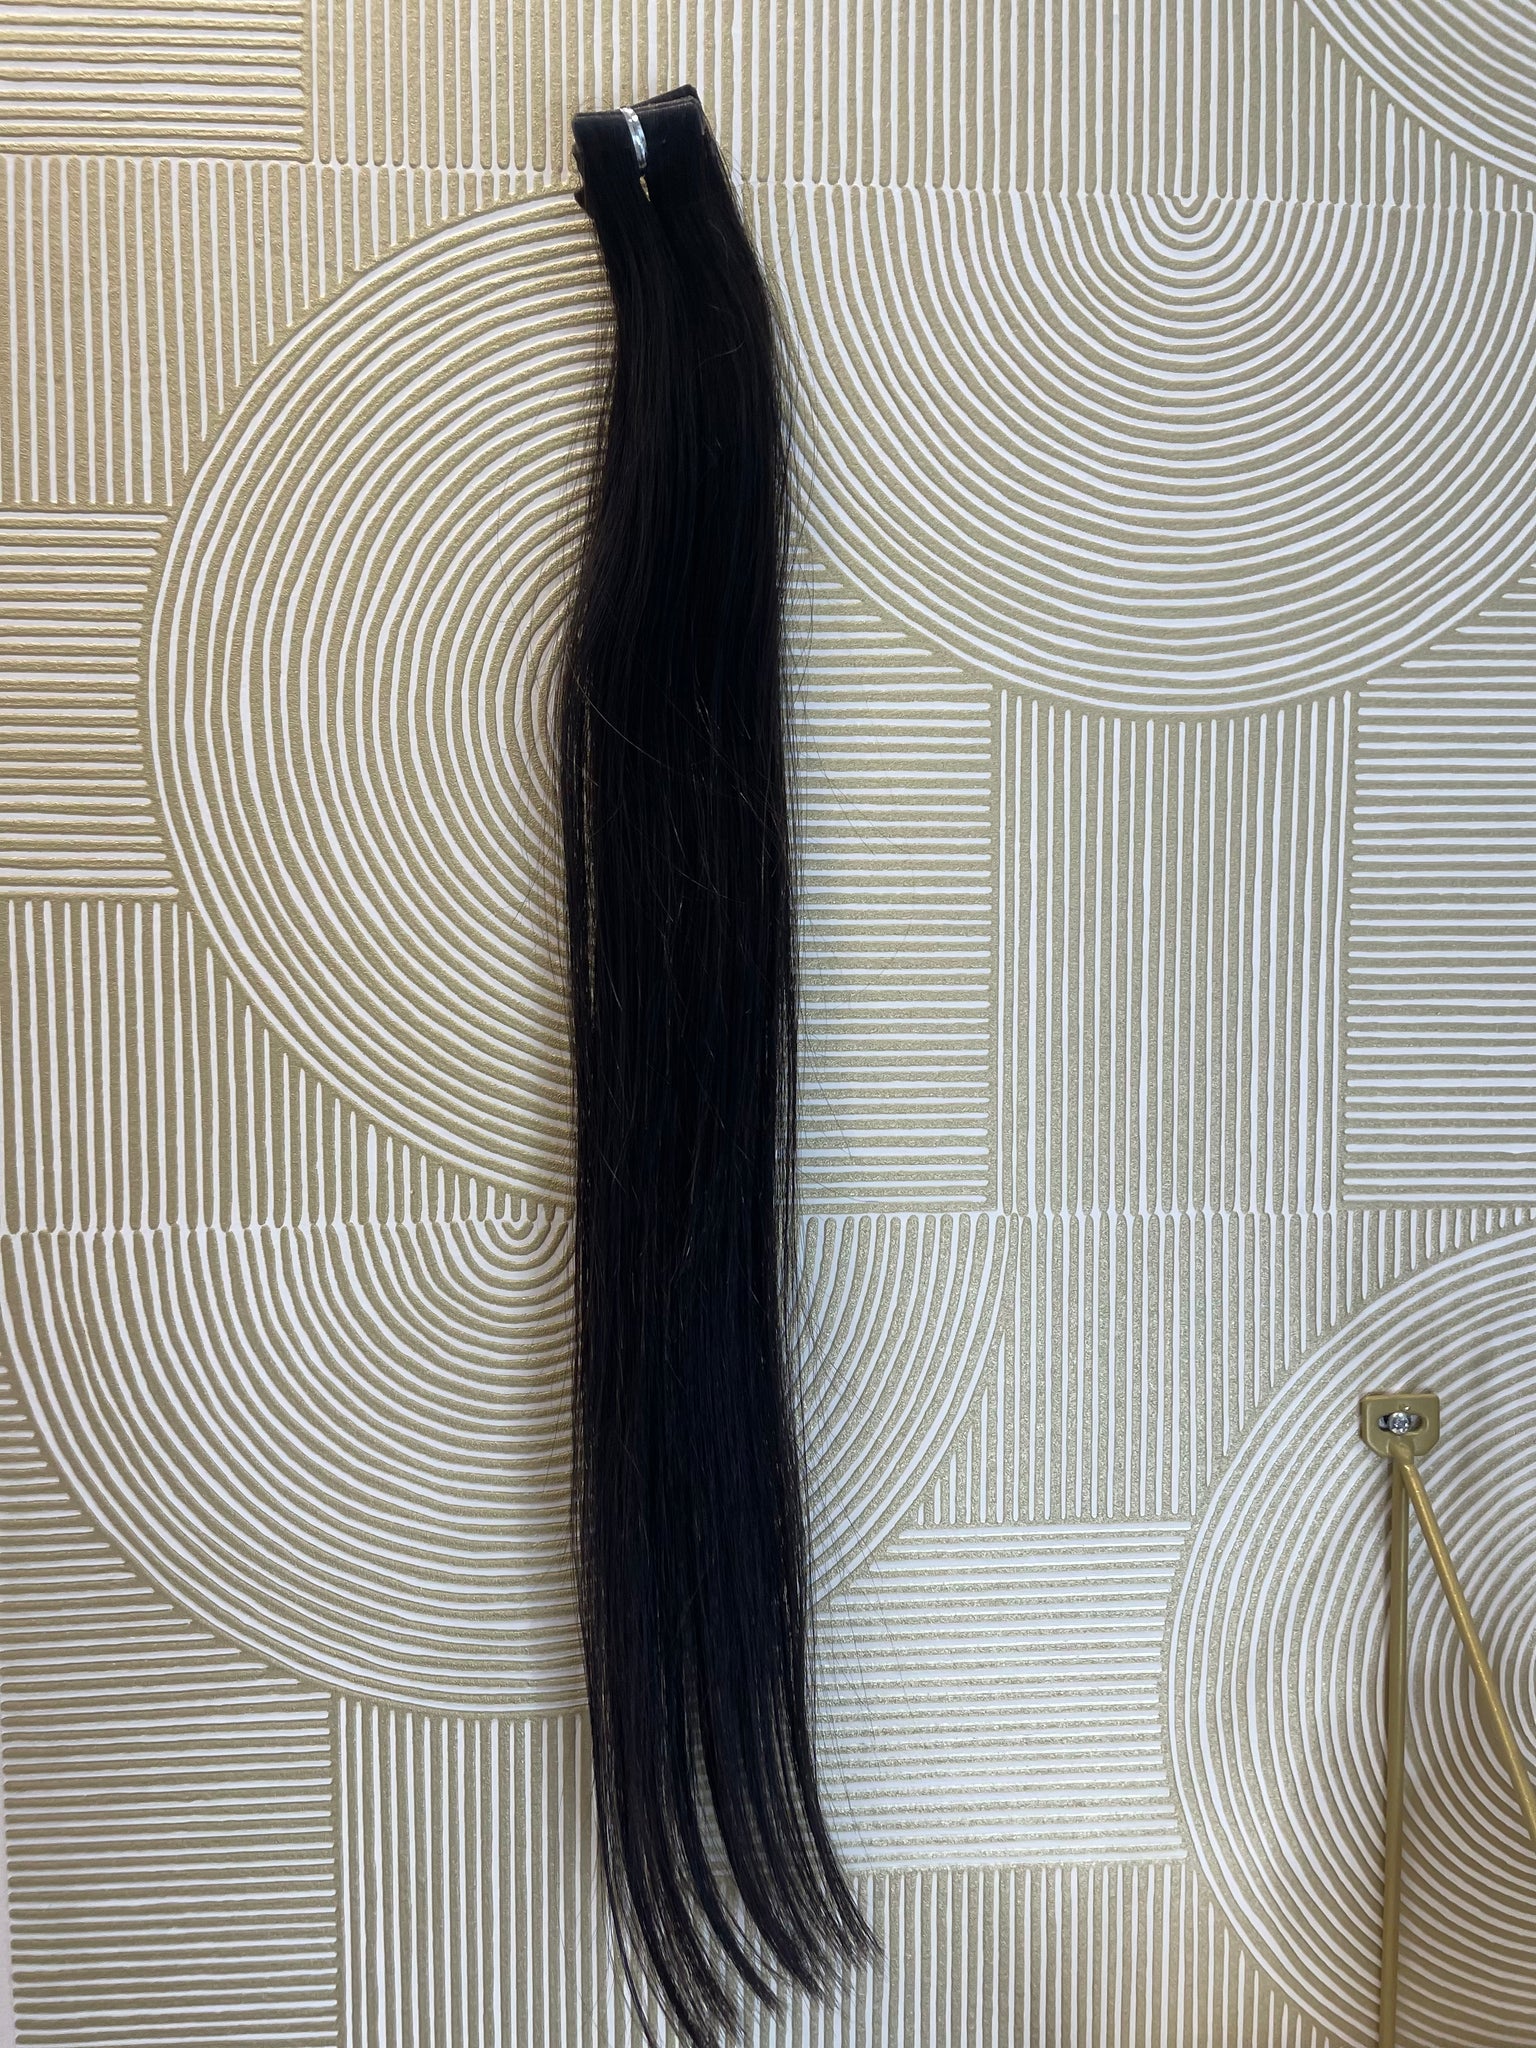 Extensions Tape 50 gram (1B) 55 cm European hair